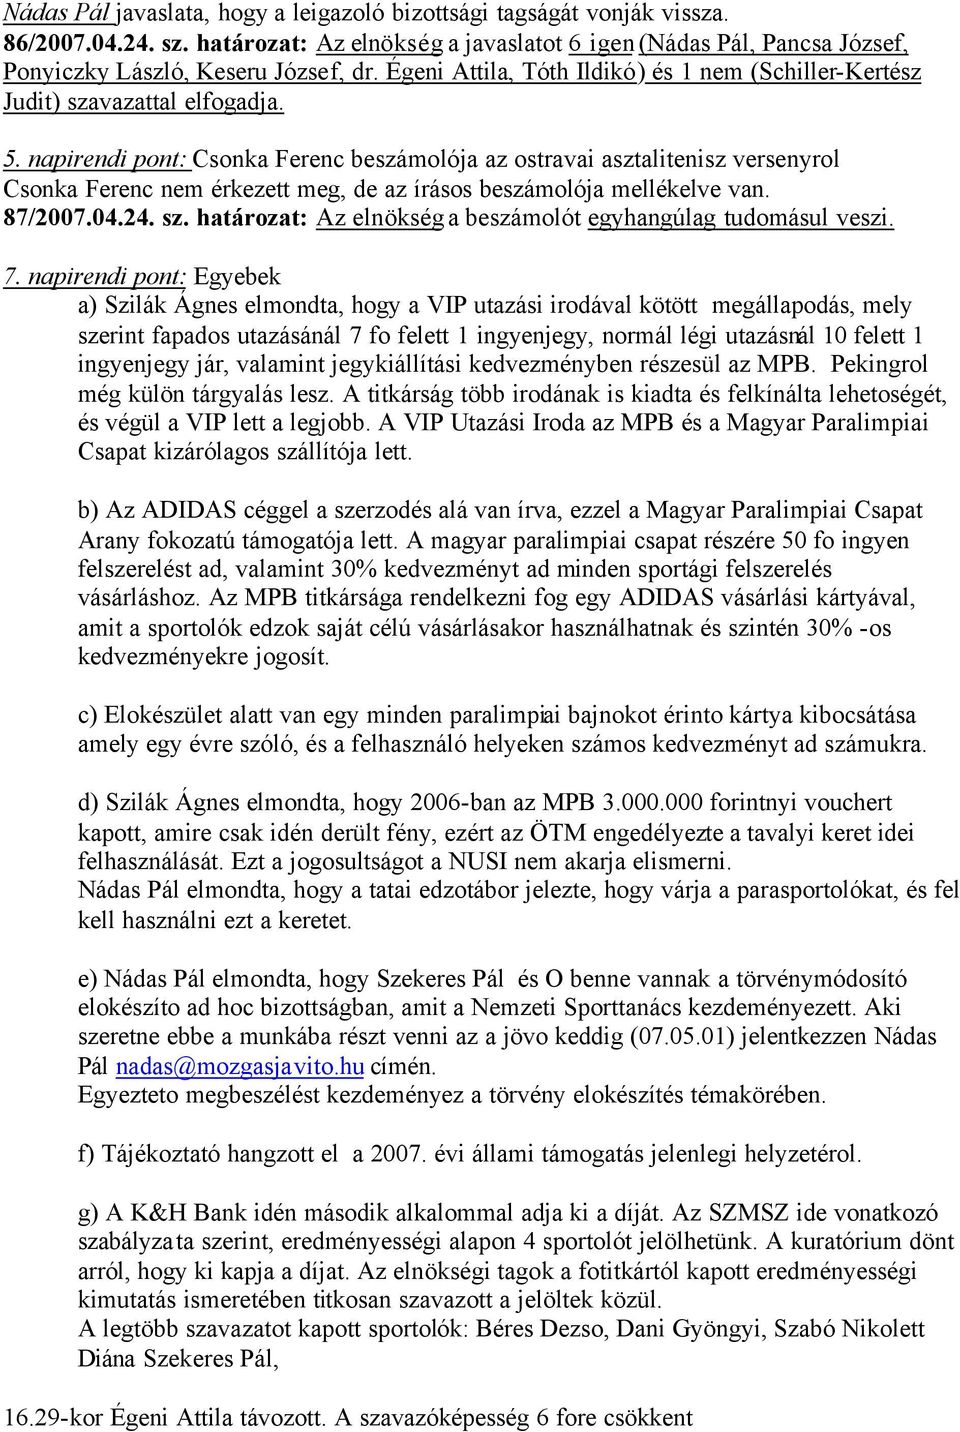 napirendi pont: Csonka Ferenc beszámolója az ostravai asztalitenisz versenyrol Csonka Ferenc nem érkezett meg, de az írásos beszámolója mellékelve van. 87/2007.04.24. sz.